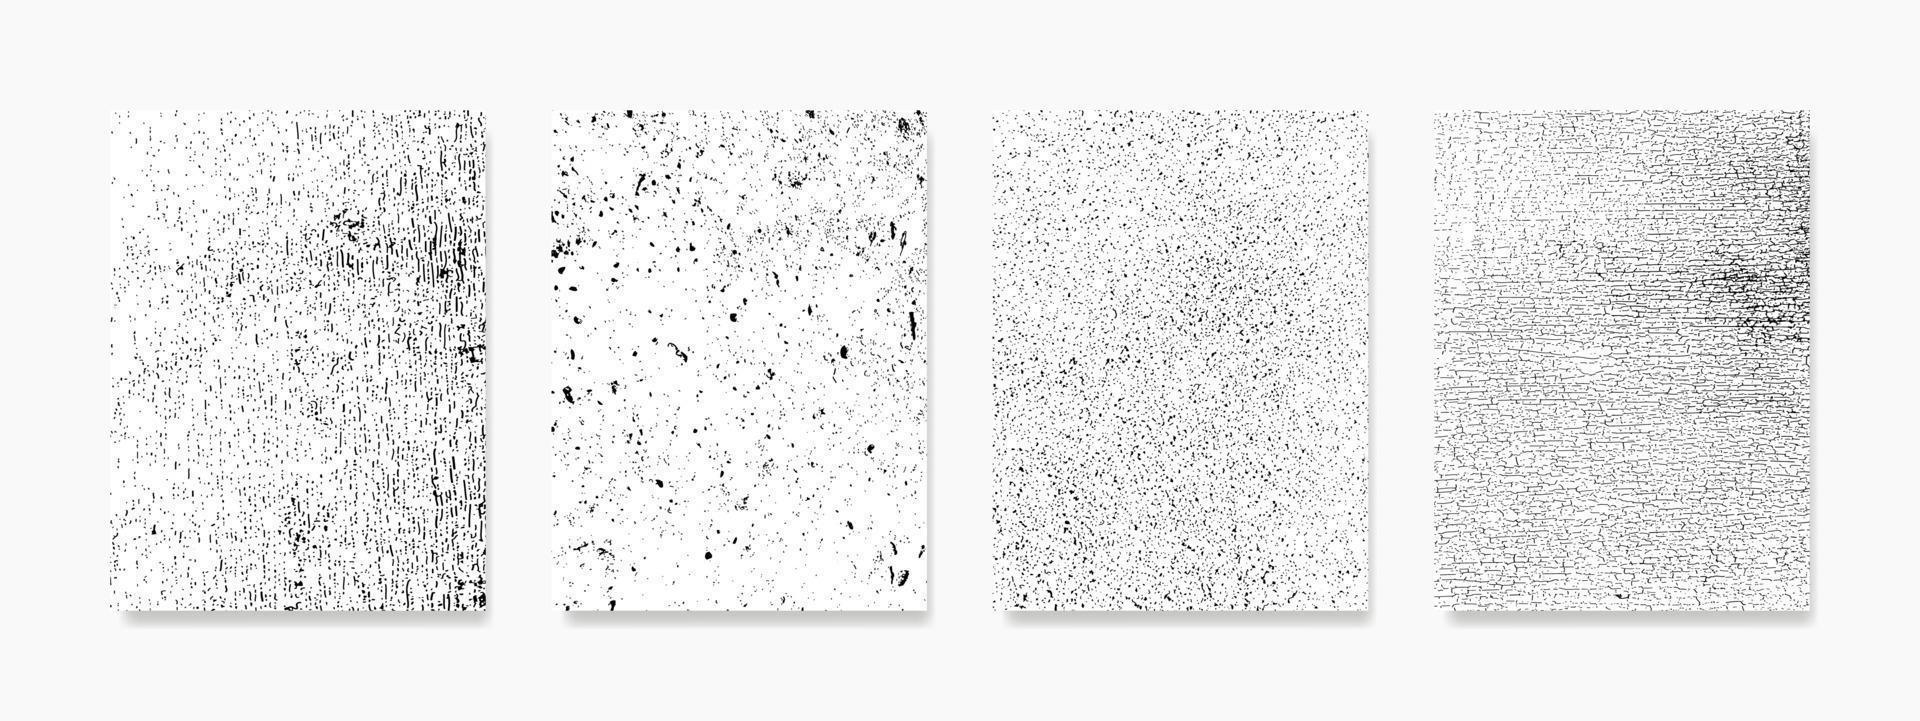 ge din väggar en naturlig och organisk se med detta uppsättning av svart kornig textur minimalistisk bakgrunder, terar texturerad geometrisk former. perfekt för skriva ut, omslag, tapet, minimal, och naturlig. vektor